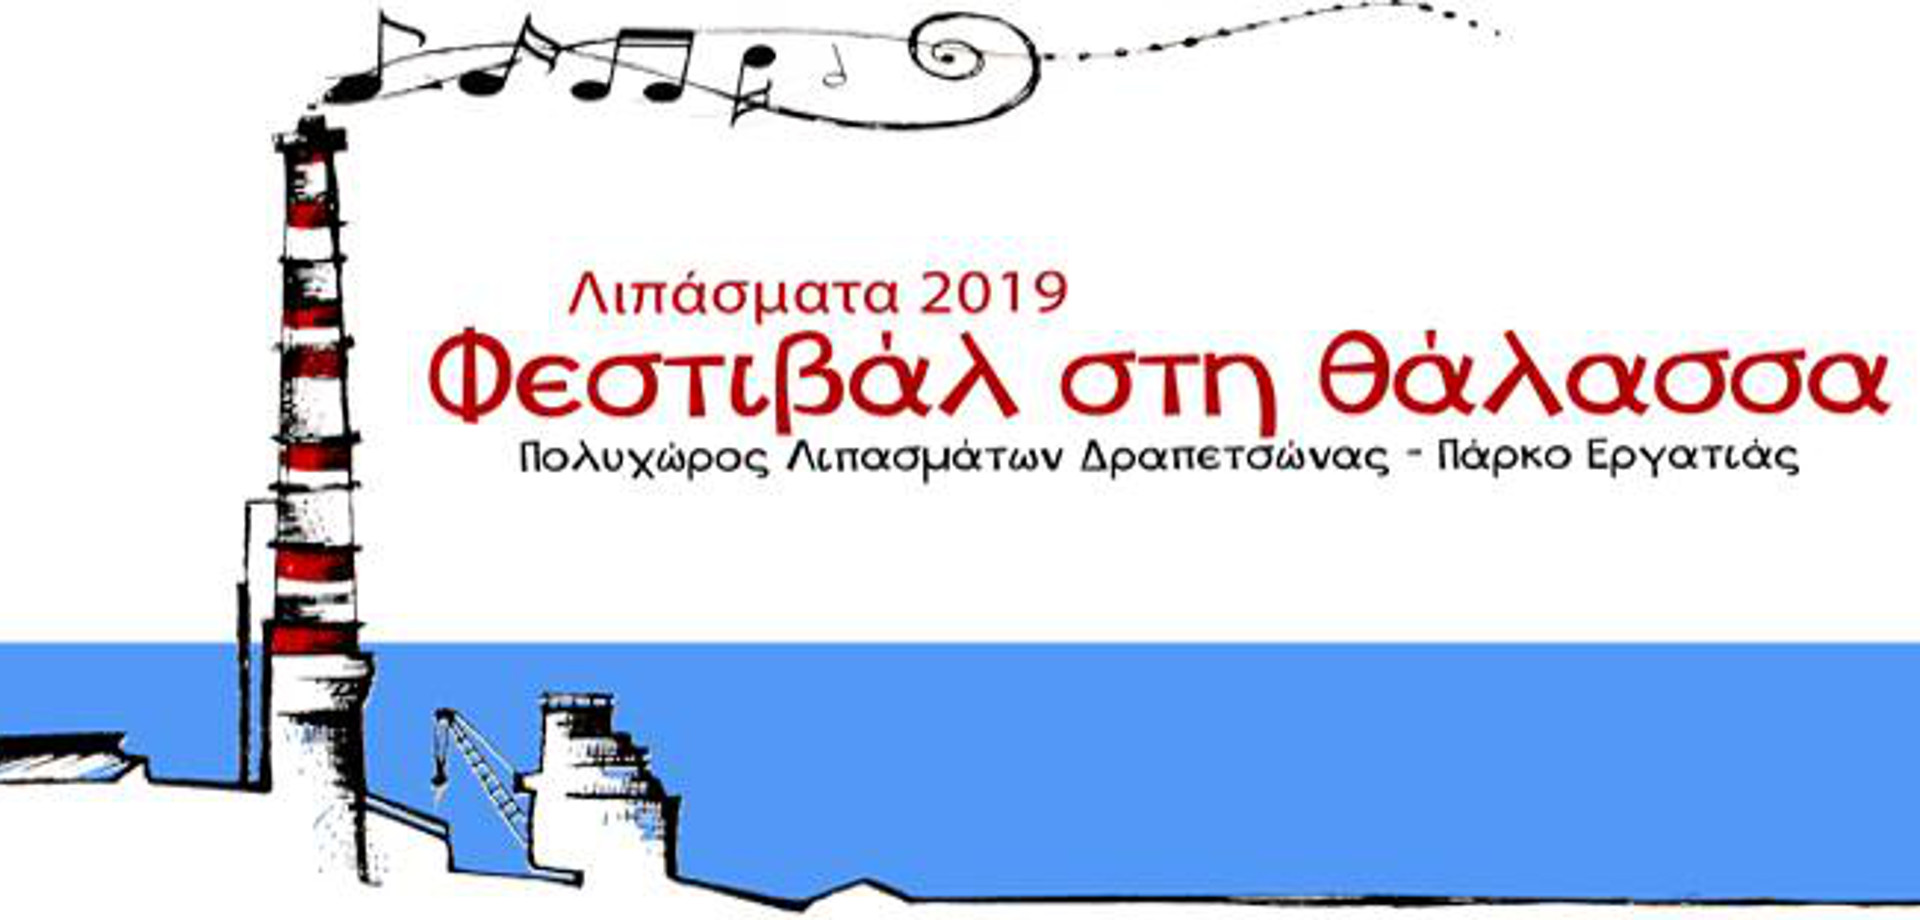 Φεστιβάλ στη θάλασσα - Λιπάσματα 2019